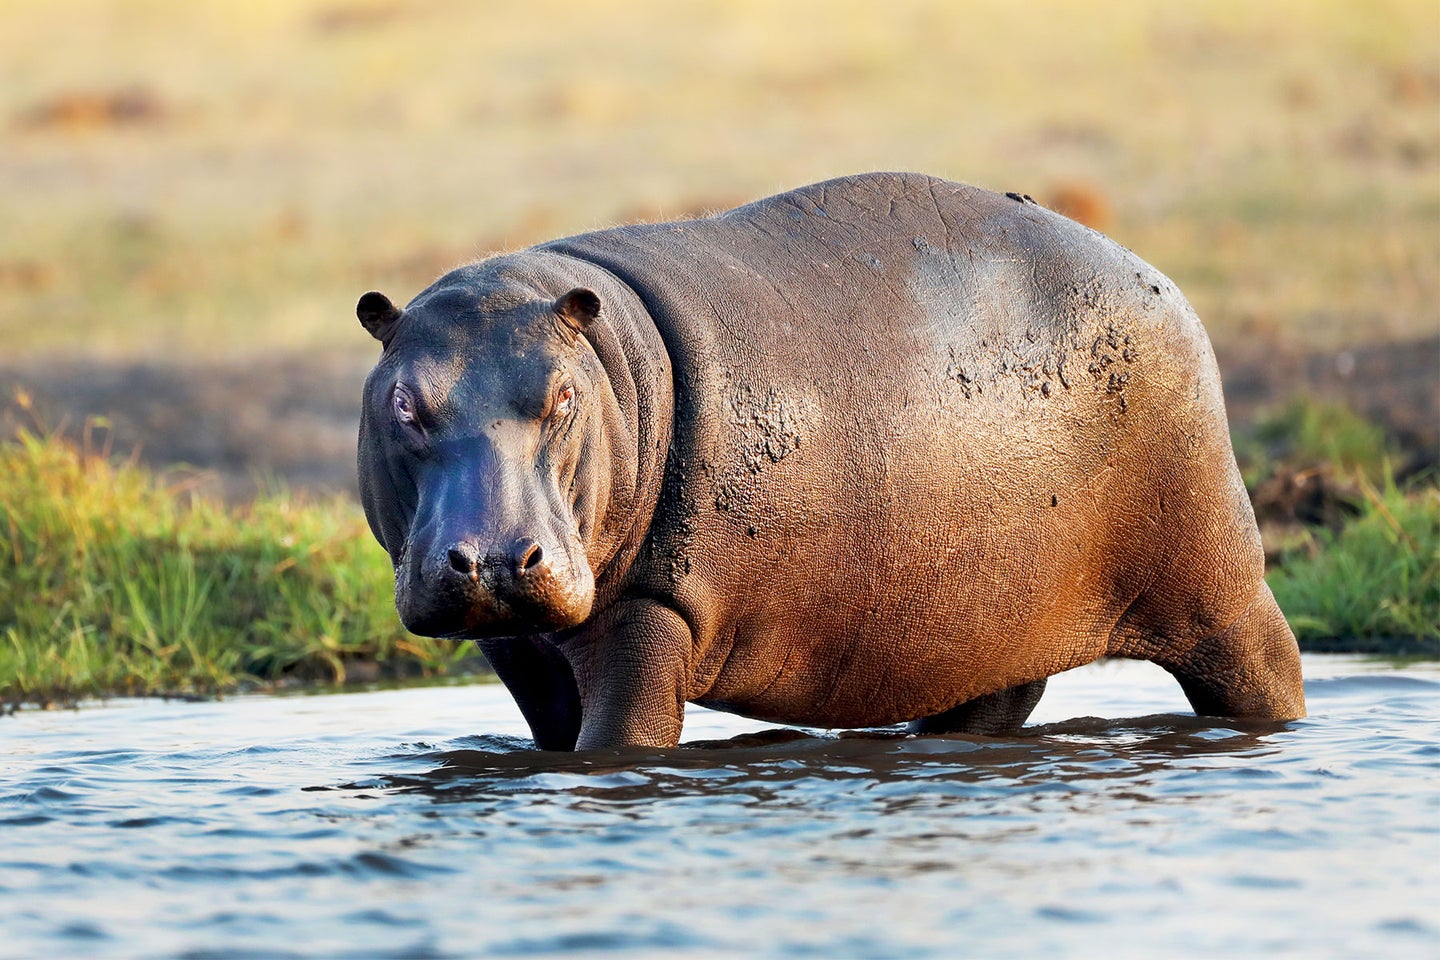 A hippo in a river in Africa.